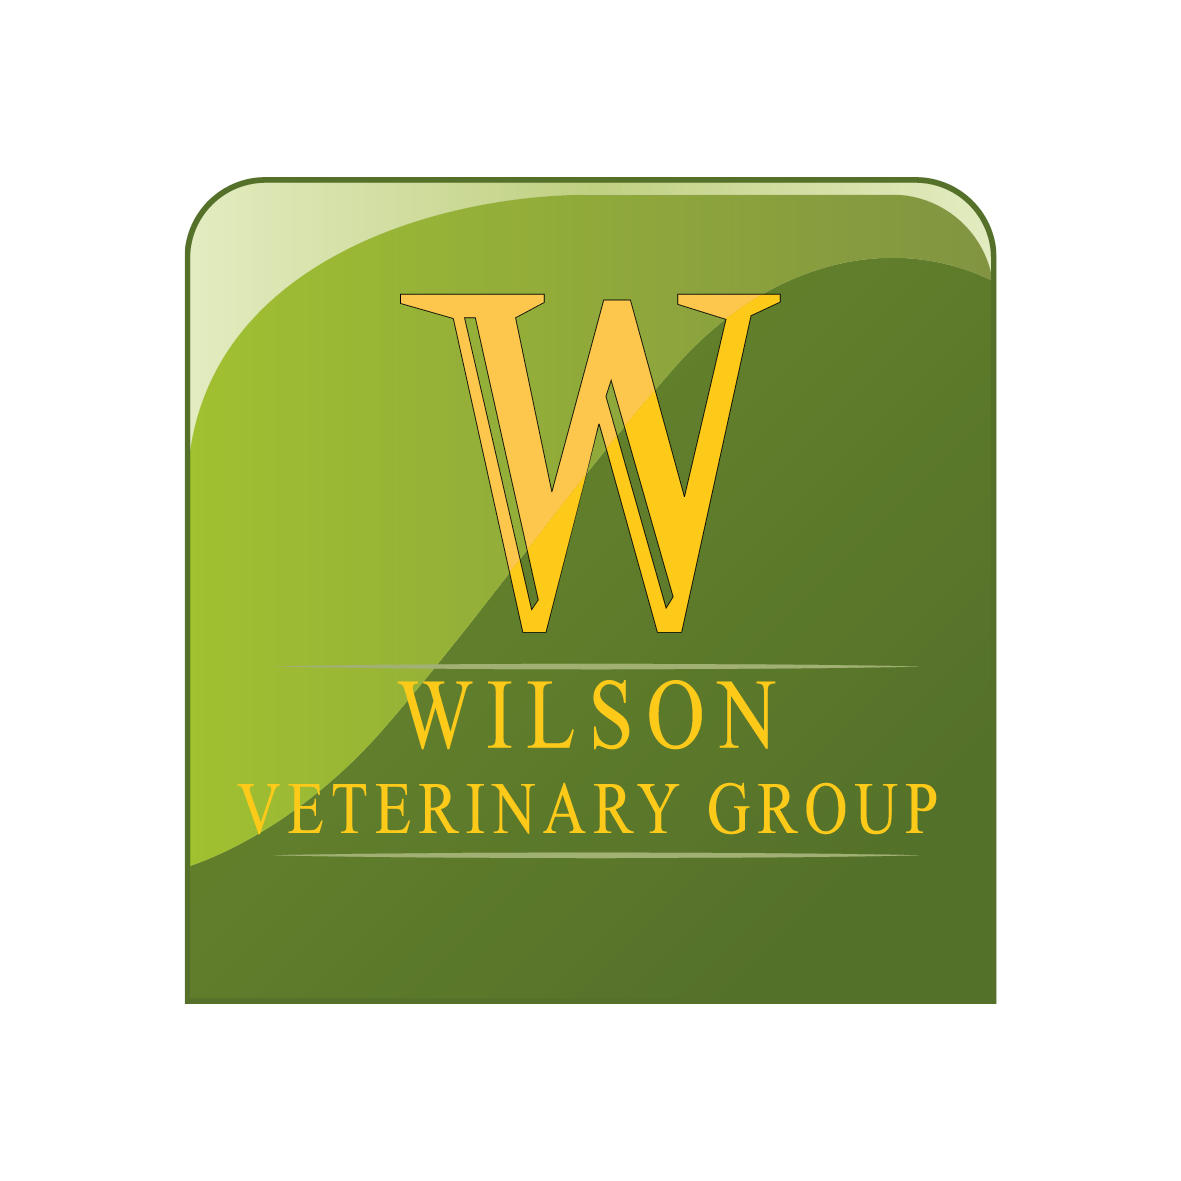 Wilson Veterinary Group, Bishop Auckland Bishop Auckland 01388 602707